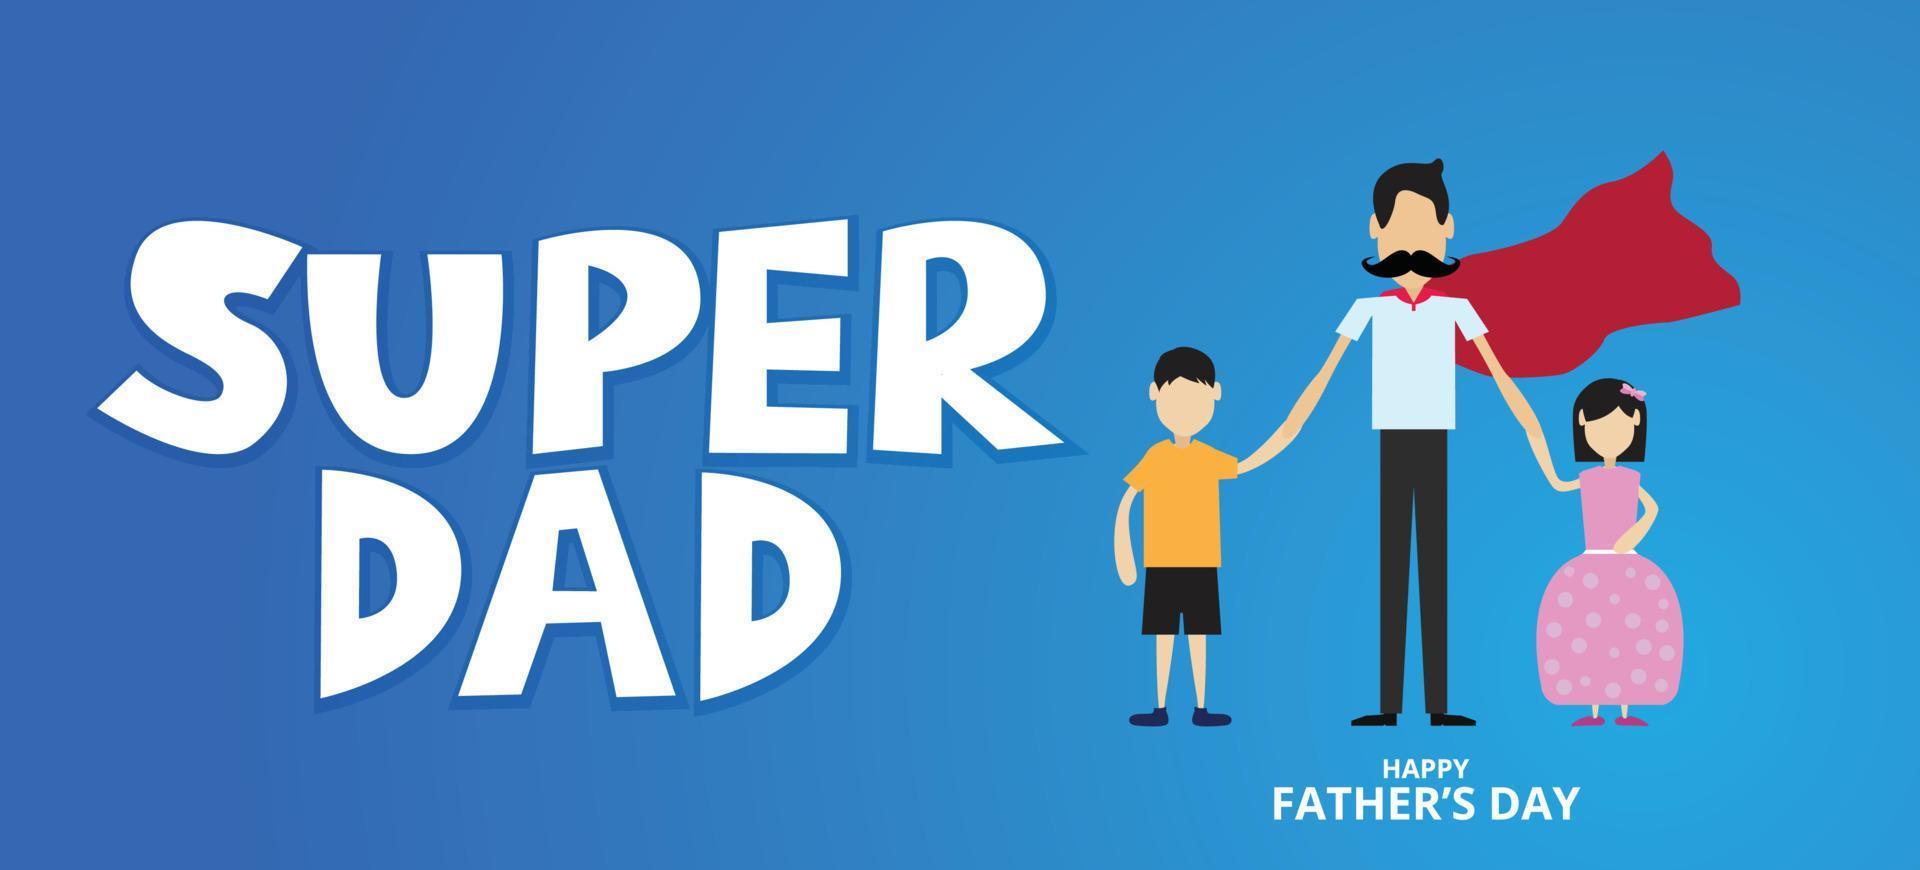 super vader, gelukkige vaders dag, met de hand van zijn zoon en dochter vastgehouden, liefdesvader concept, vectorillustratie vector